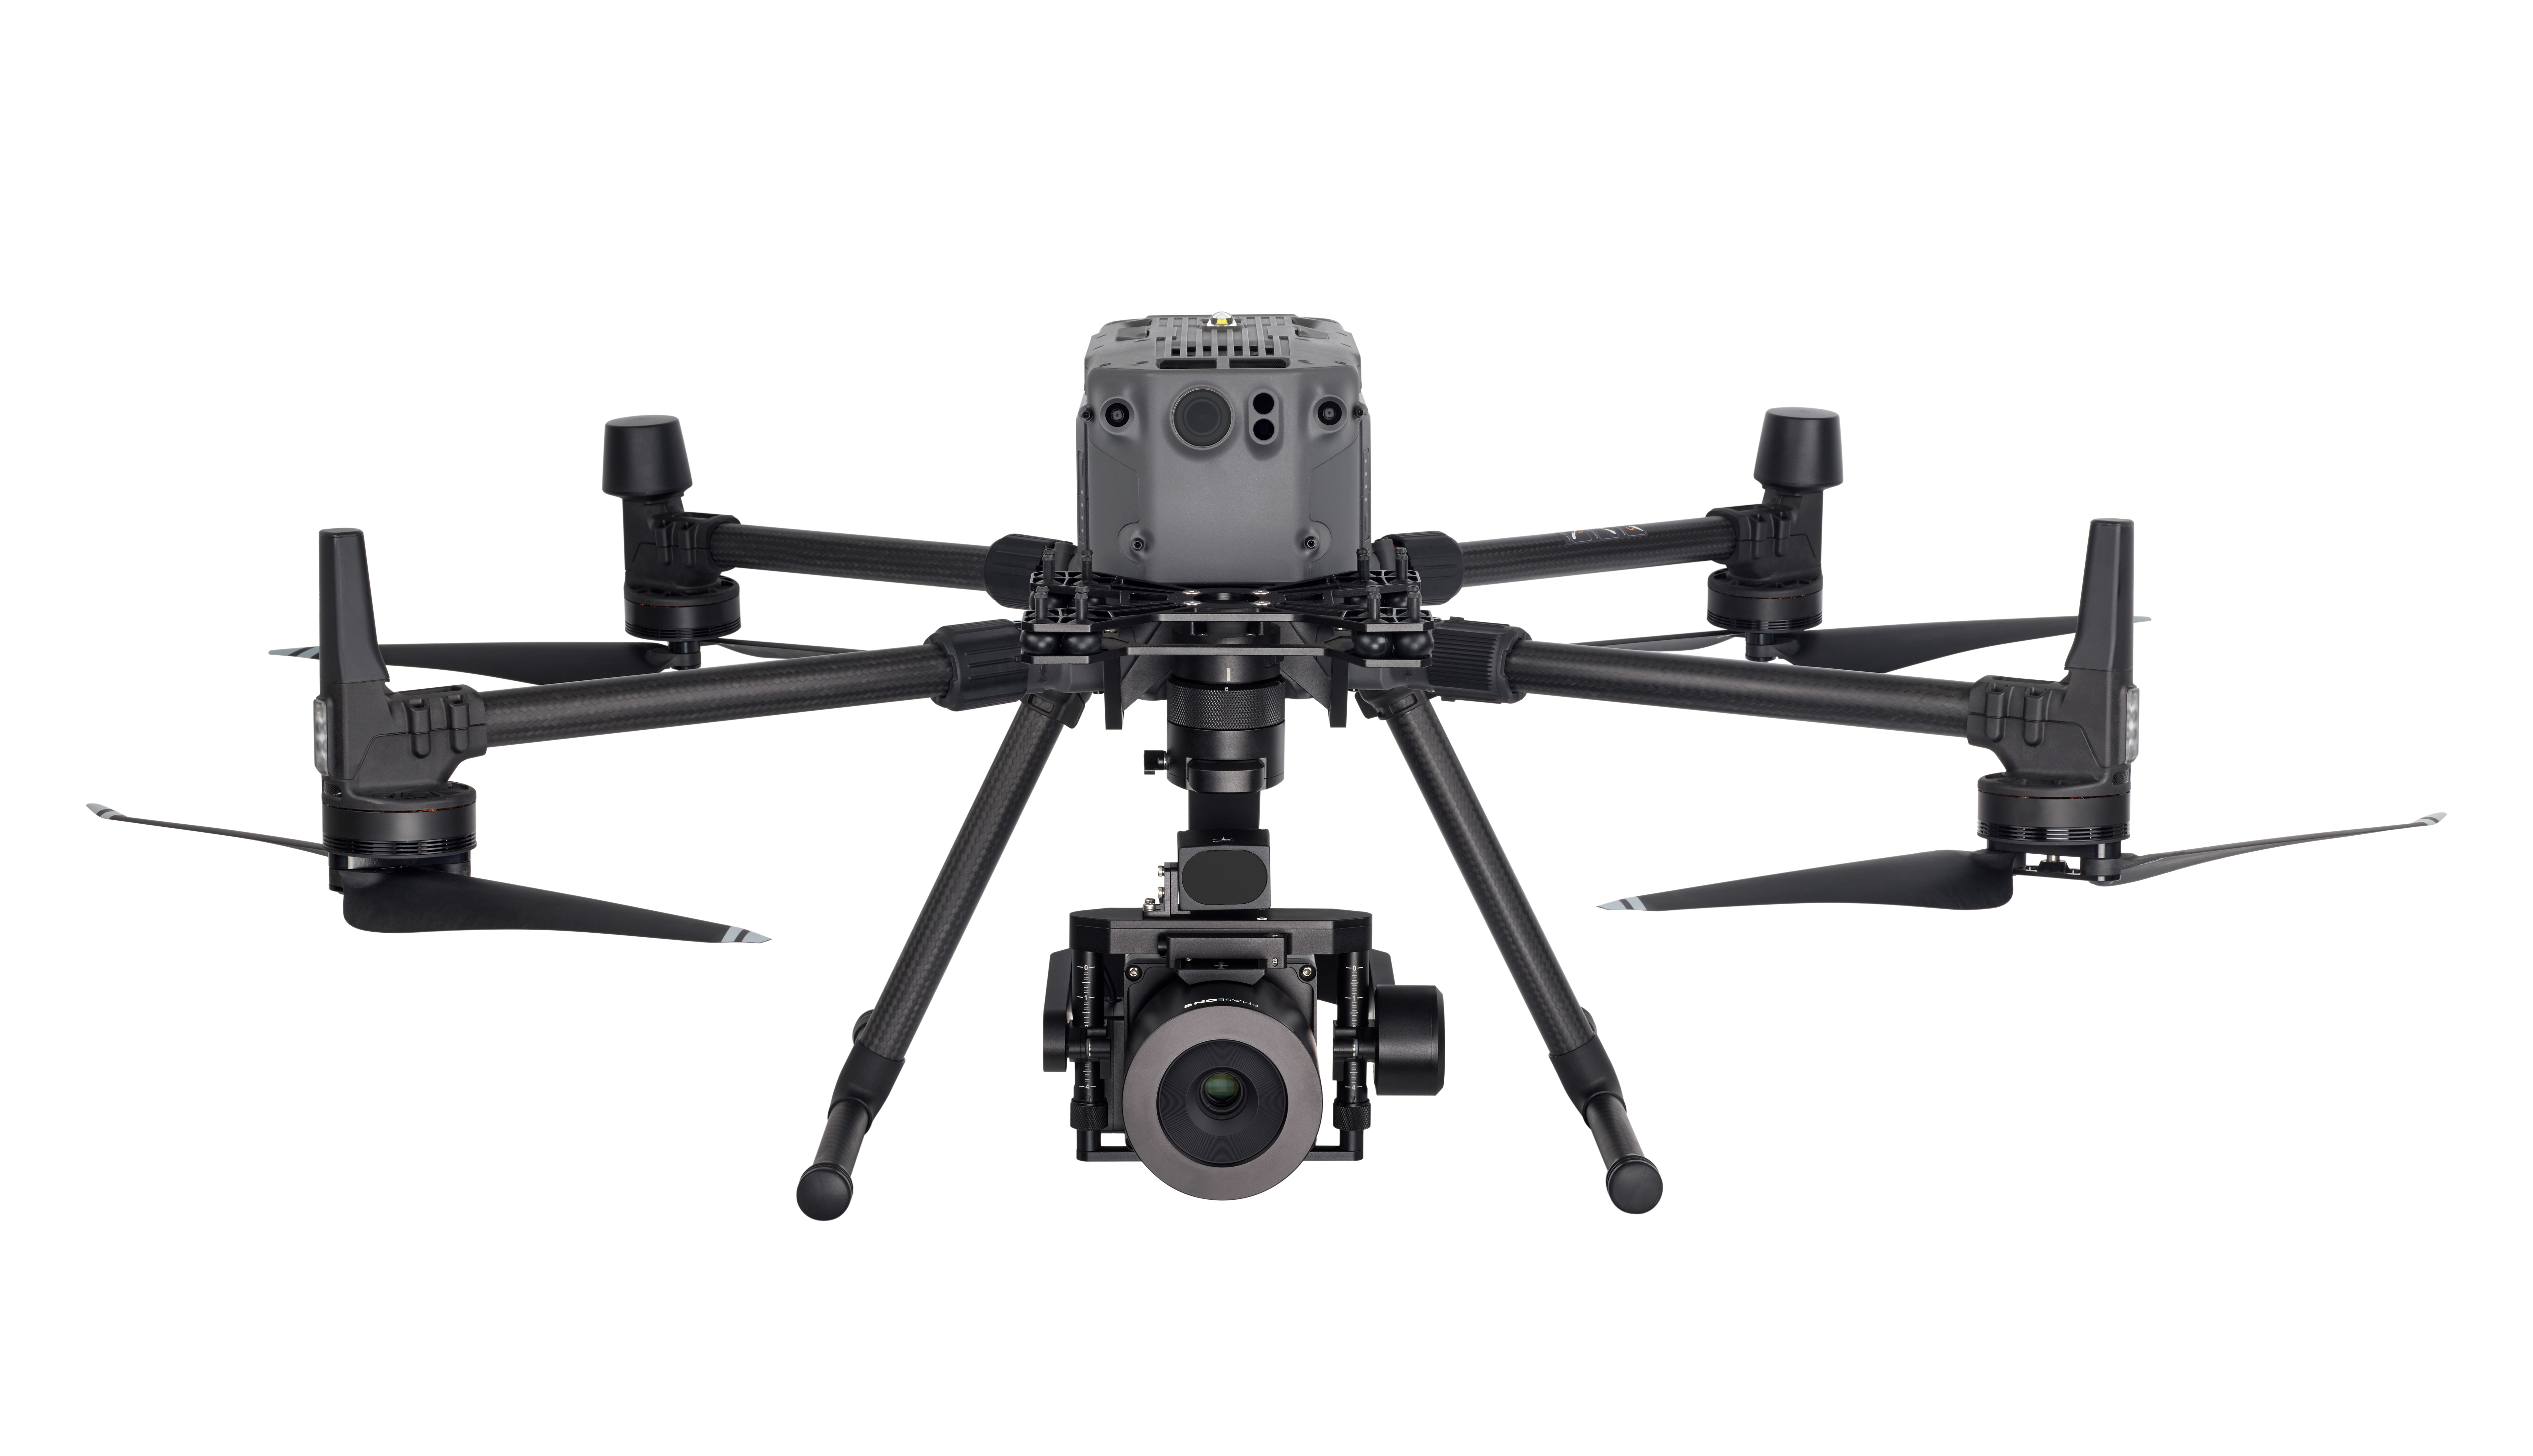 iXM 100MP UAV camera - Phase One Drone Inspection Camera